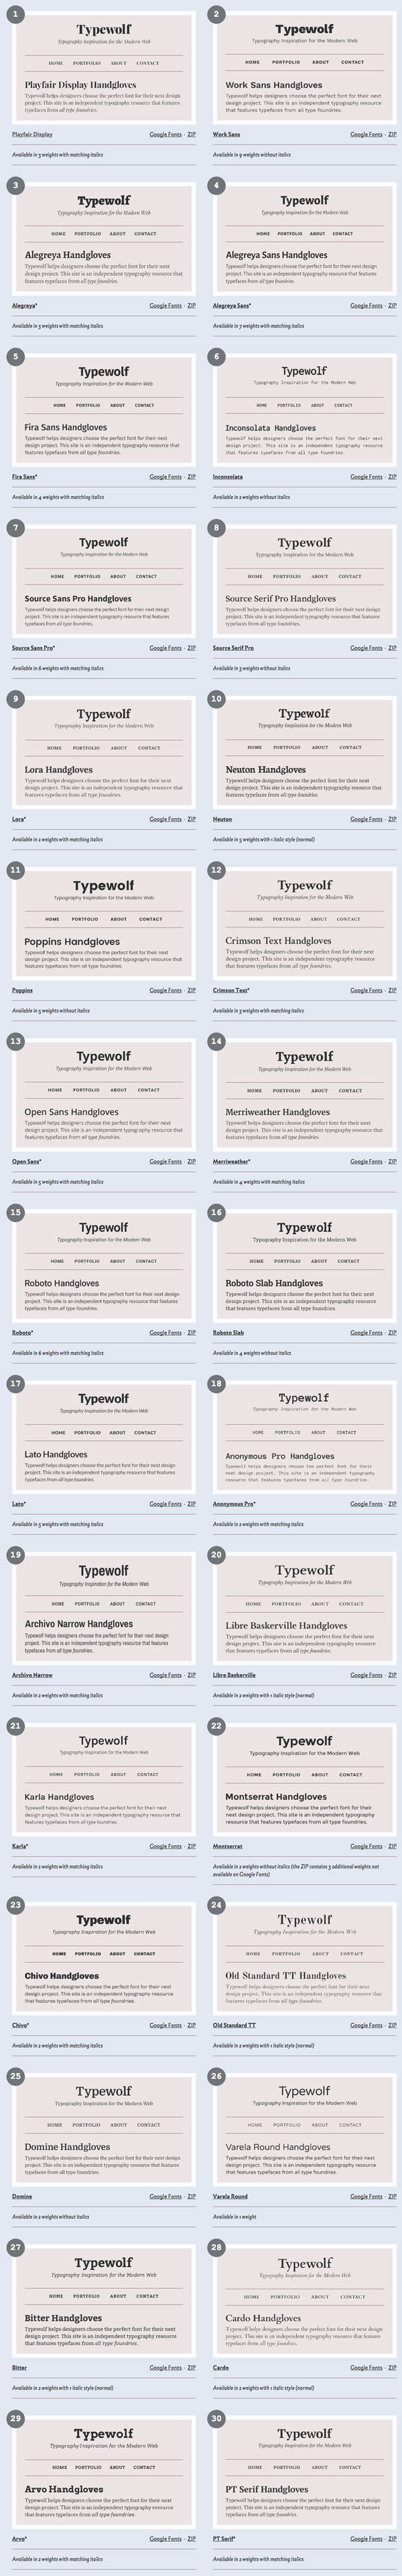 人気フォントブログ「Typewolf」が選ぶGoogleフォントベスト30(2015年版)